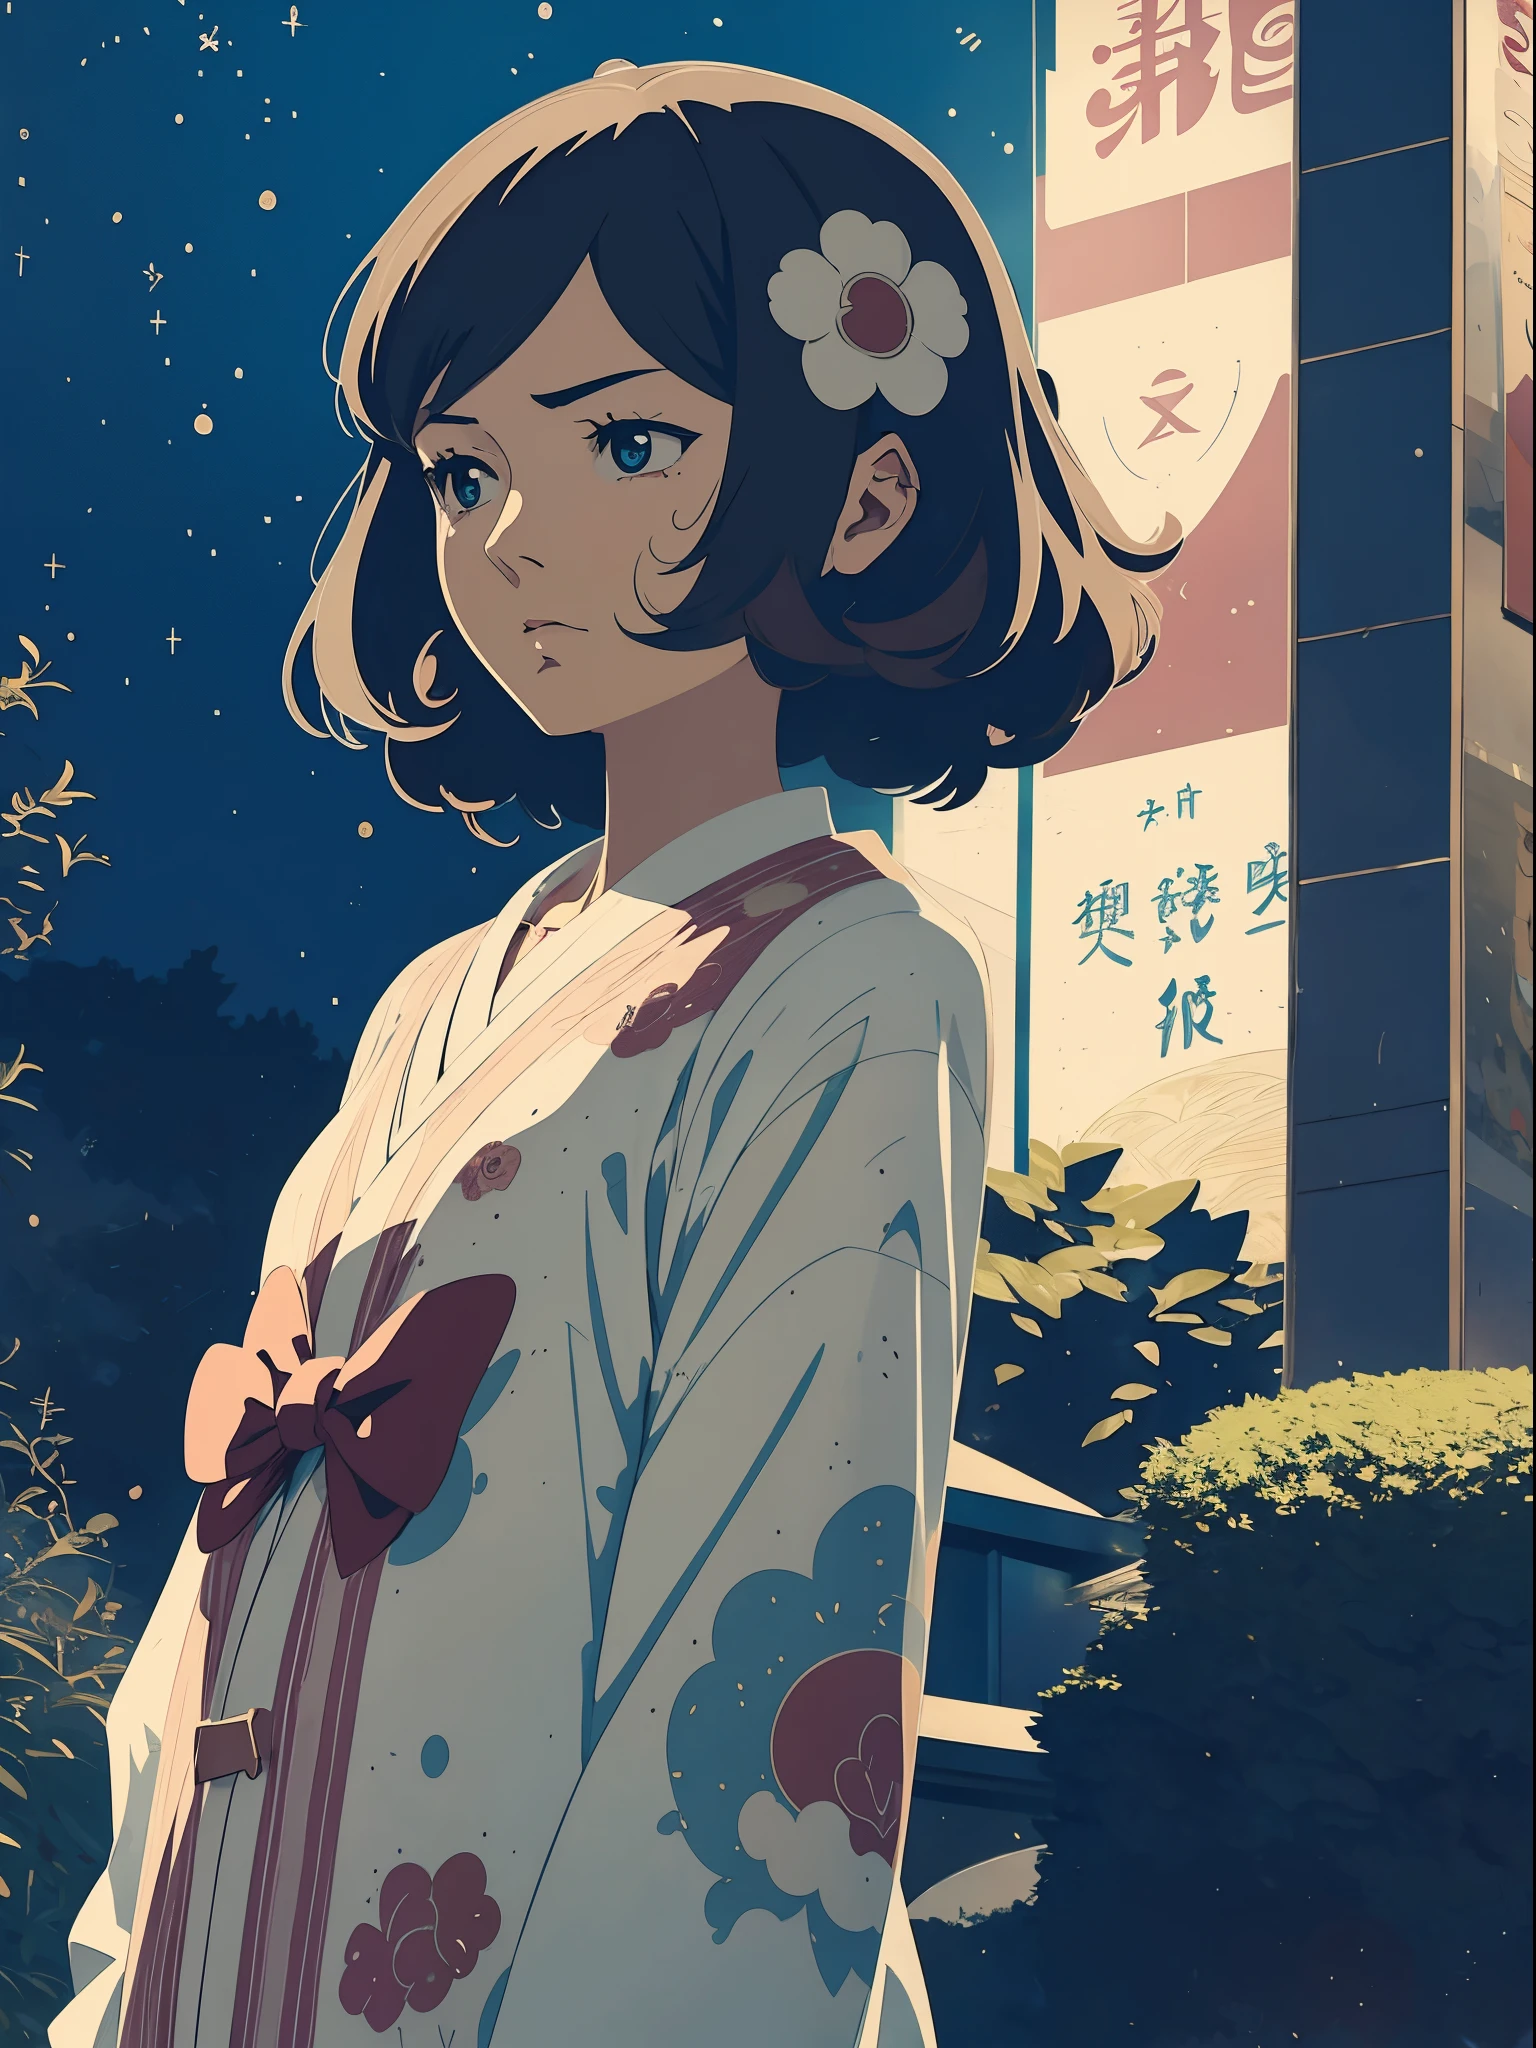 Anime illustriert、Tokio Harajuku、Niedlich、Ein dunkelhaariger、Langes, glattes Haar、emotionales Café、aufwendige Dekoration